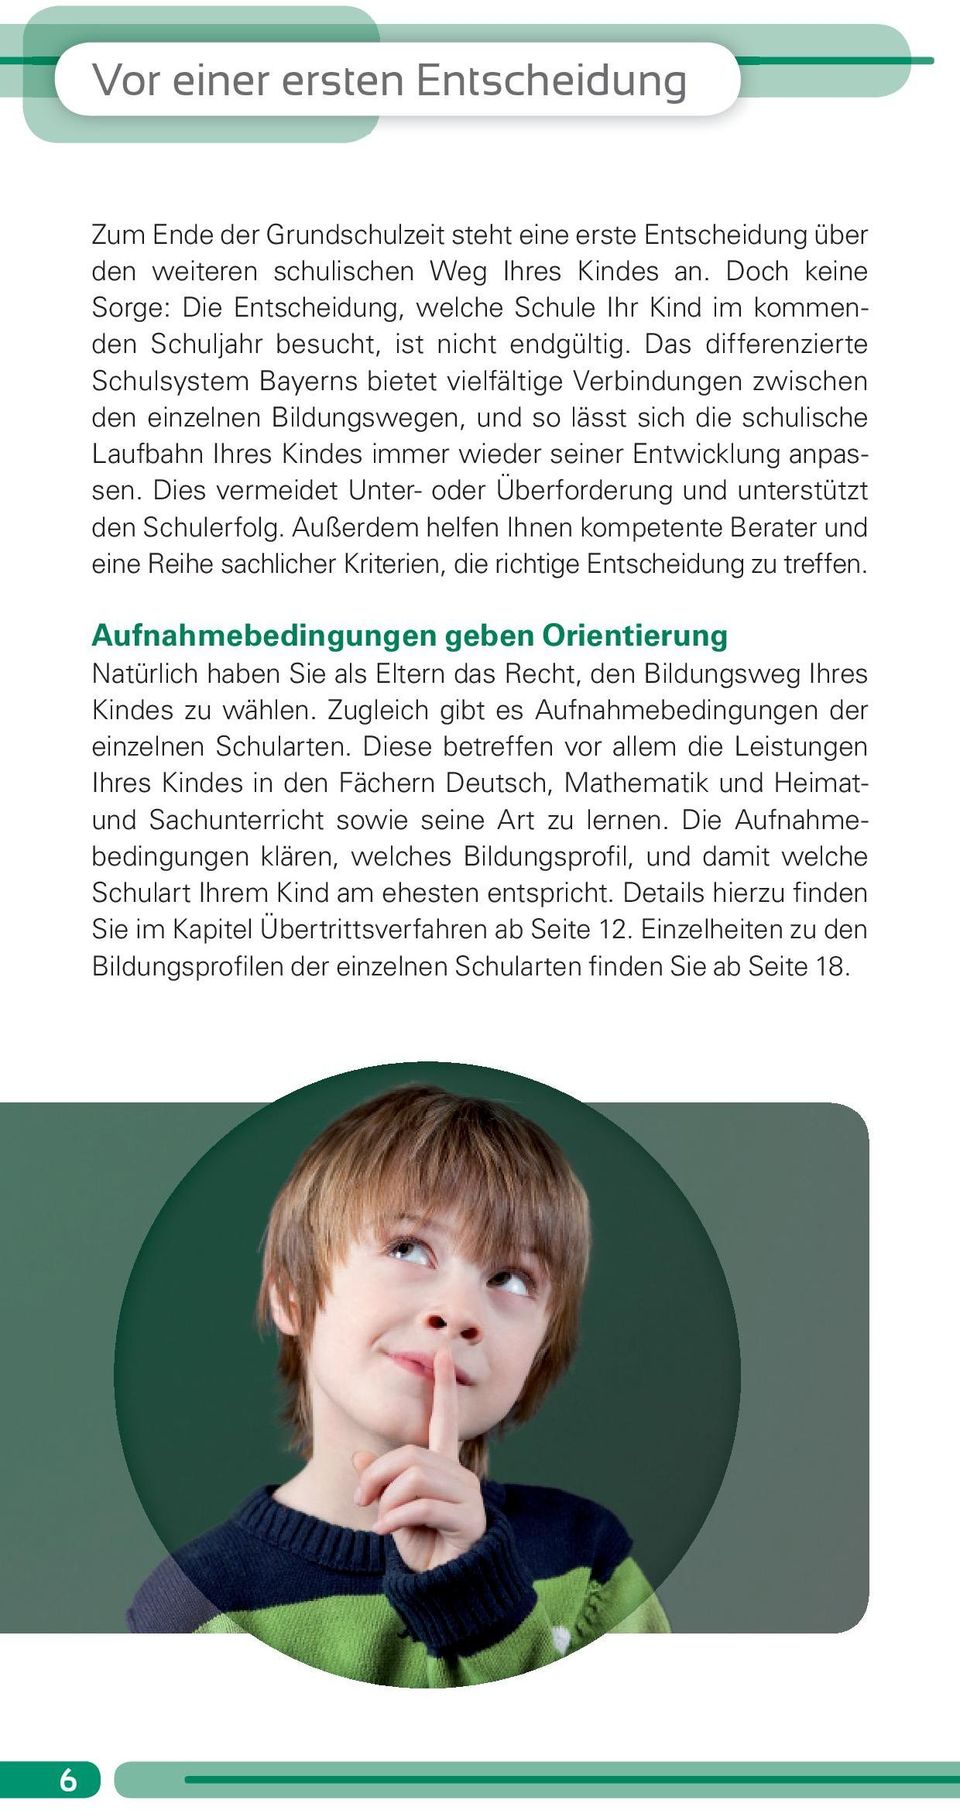 Das differenzierte Schulsystem Bayerns bietet vielfältige Verbindungen zwischen den einzelnen Bildungswegen, und so lässt sich die schulische Laufbahn Ihres Kindes immer wieder seiner Entwicklung